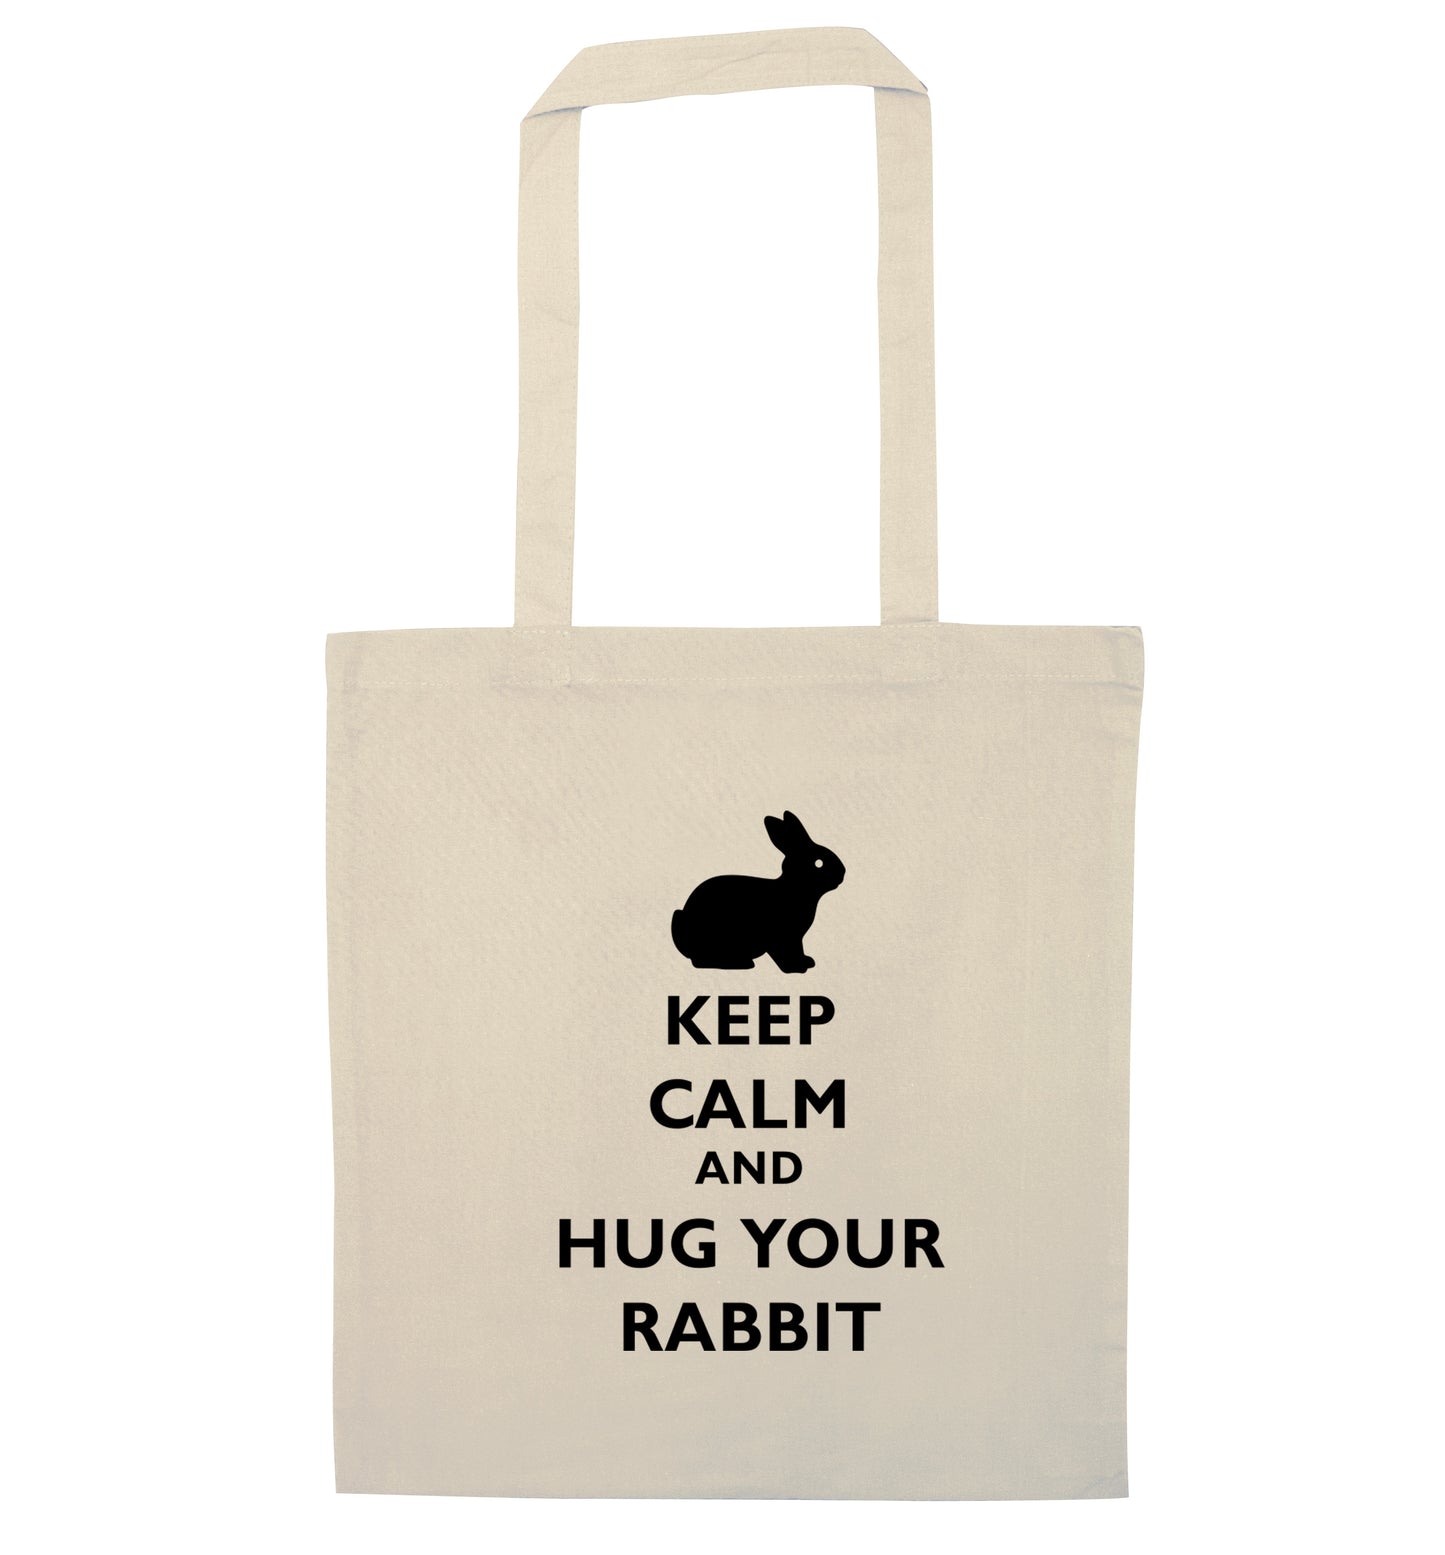 Keep calm and hug your rabbit natural tote bag